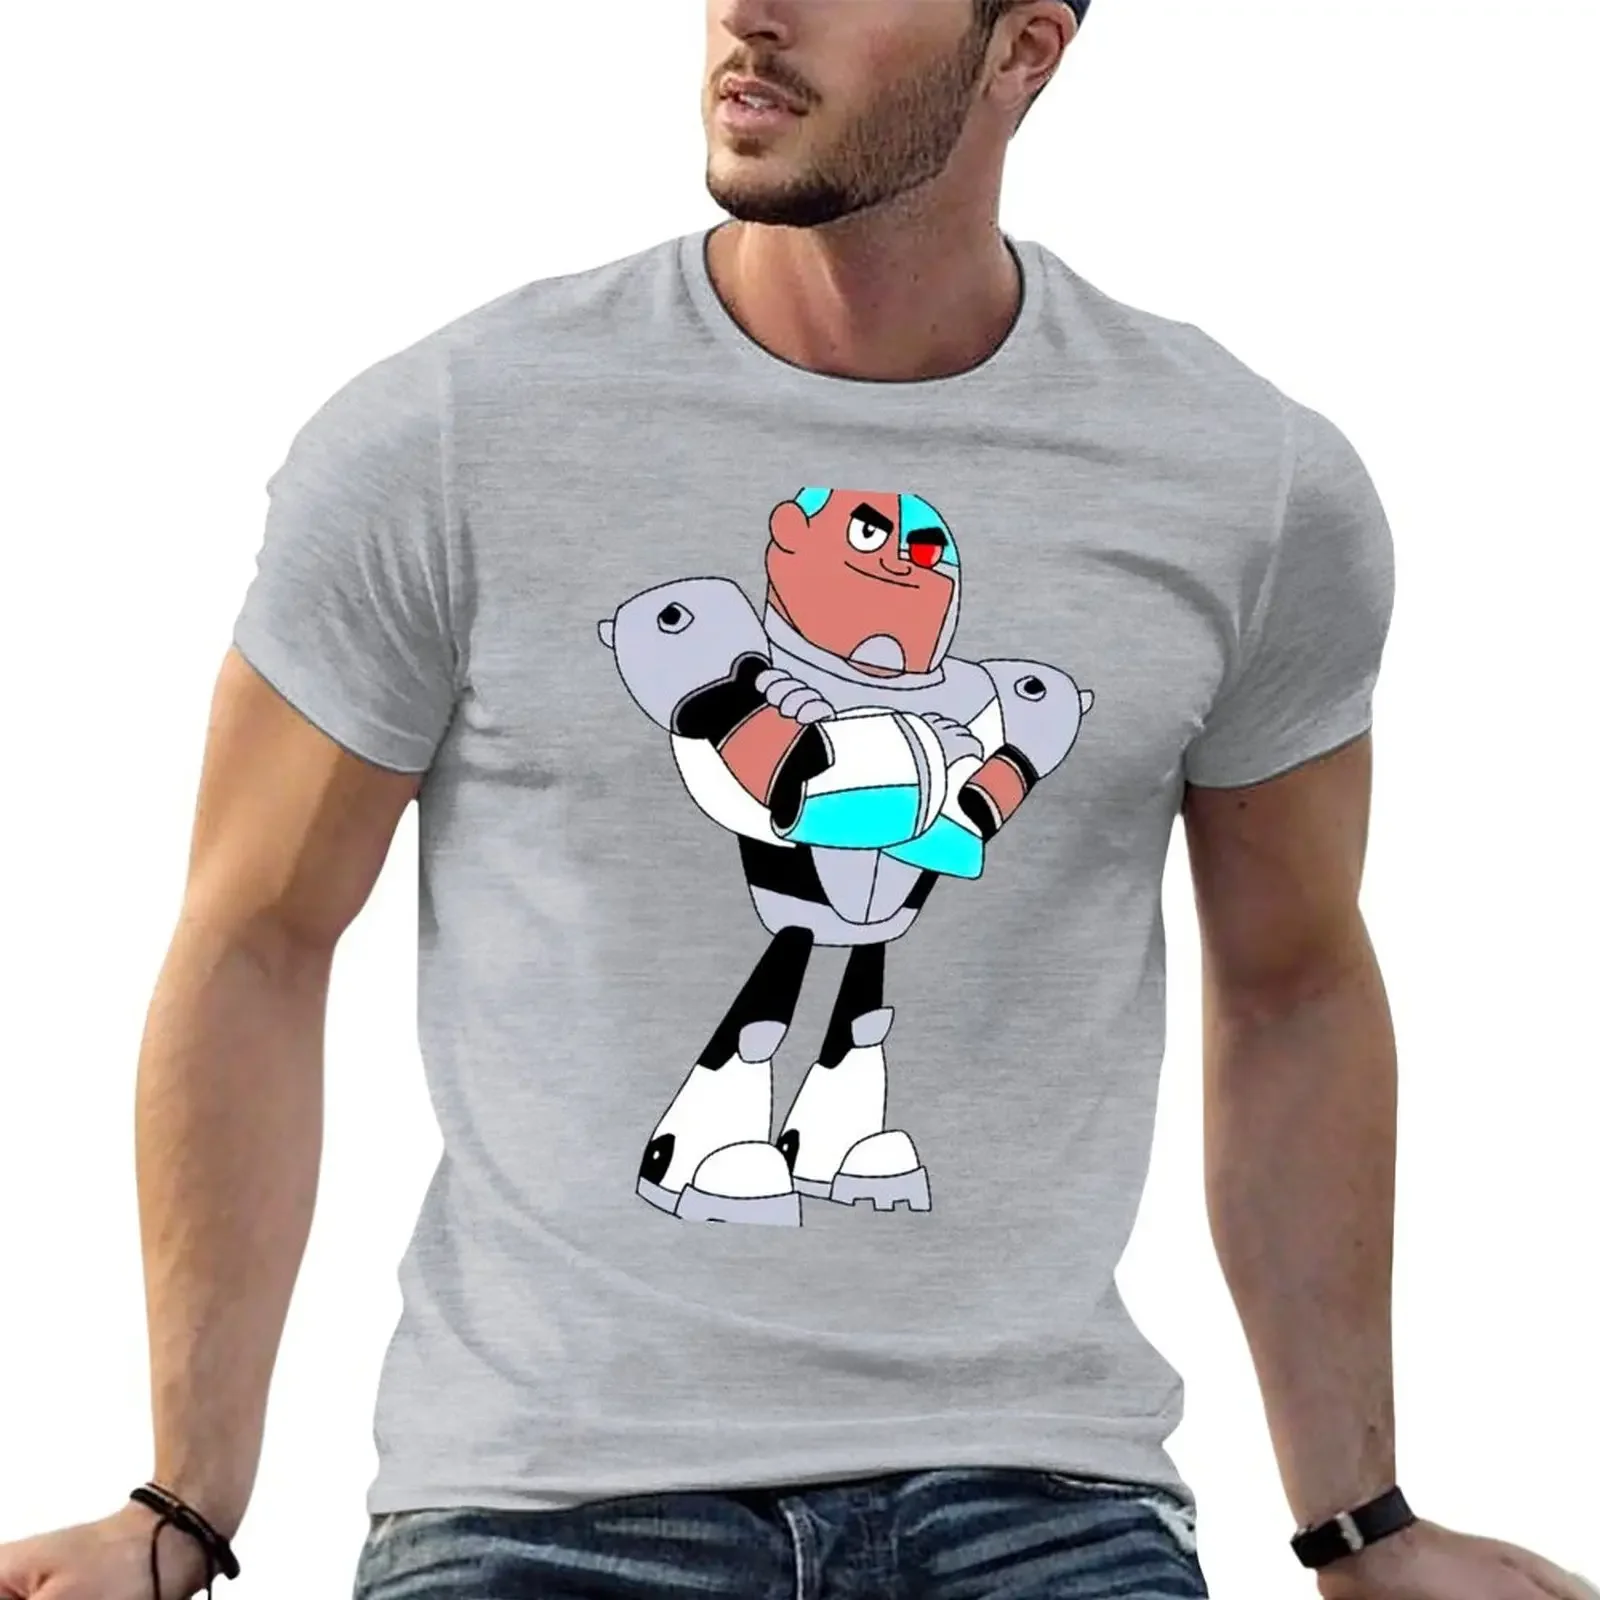 

Детская футболка с мультяшным принтом, блузка, быстросохнущая возвышенная одежда для мужчин